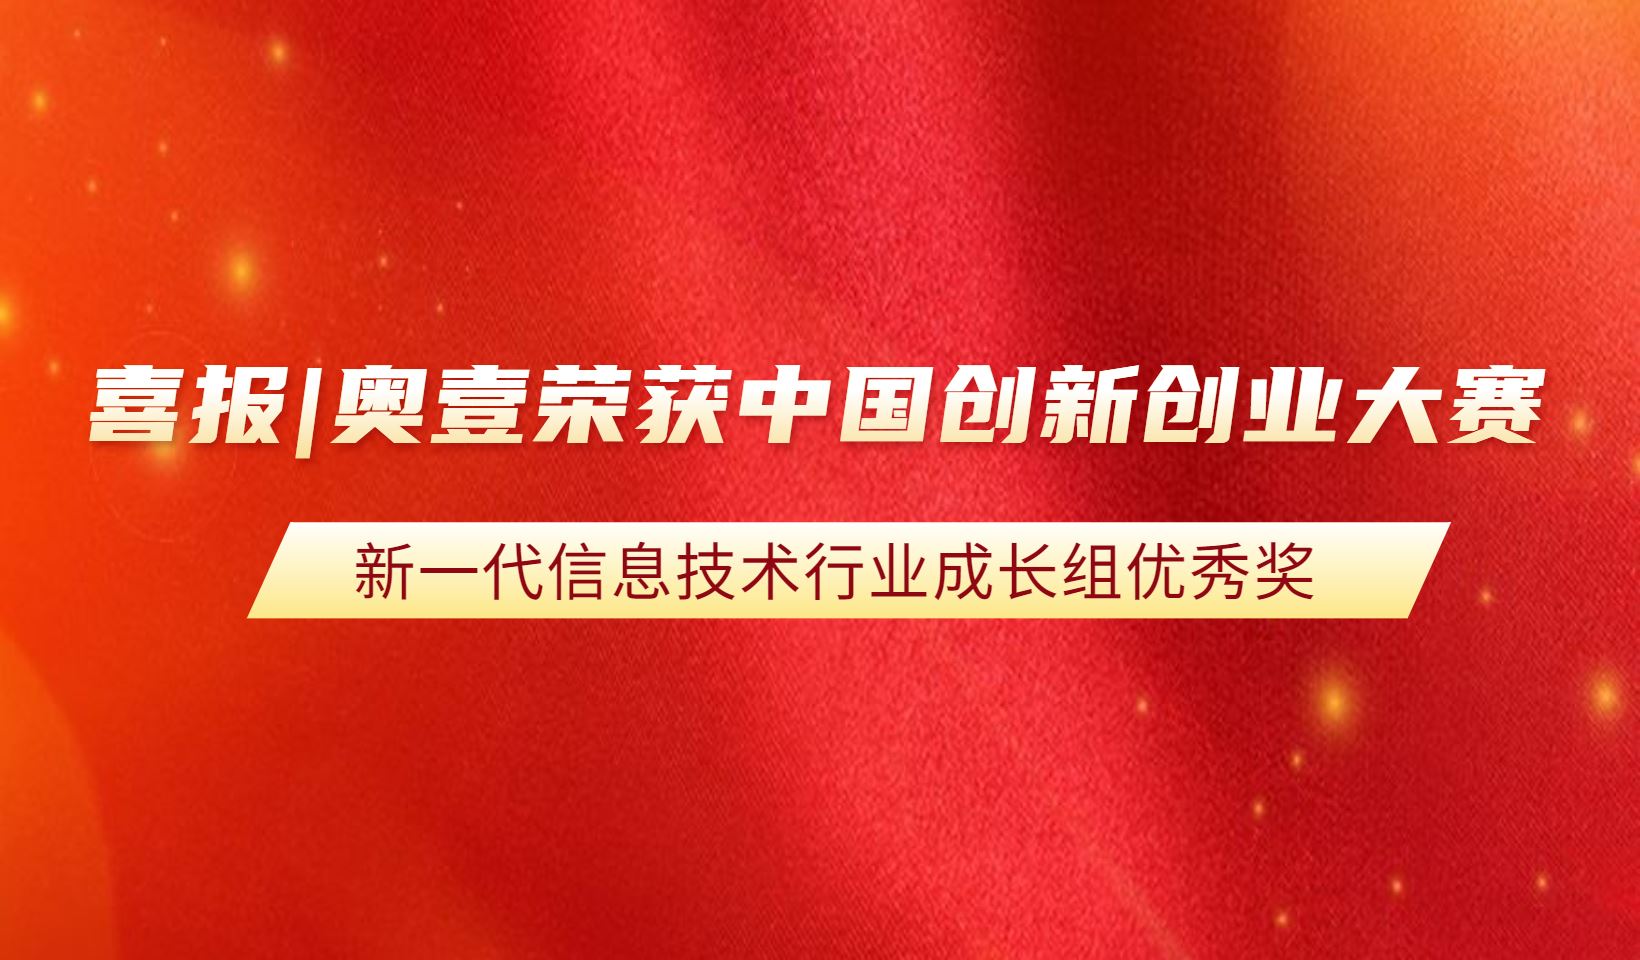 喜报|奥壹荣获中国创新创业大赛“新一代信息技术行业成长组优秀奖”